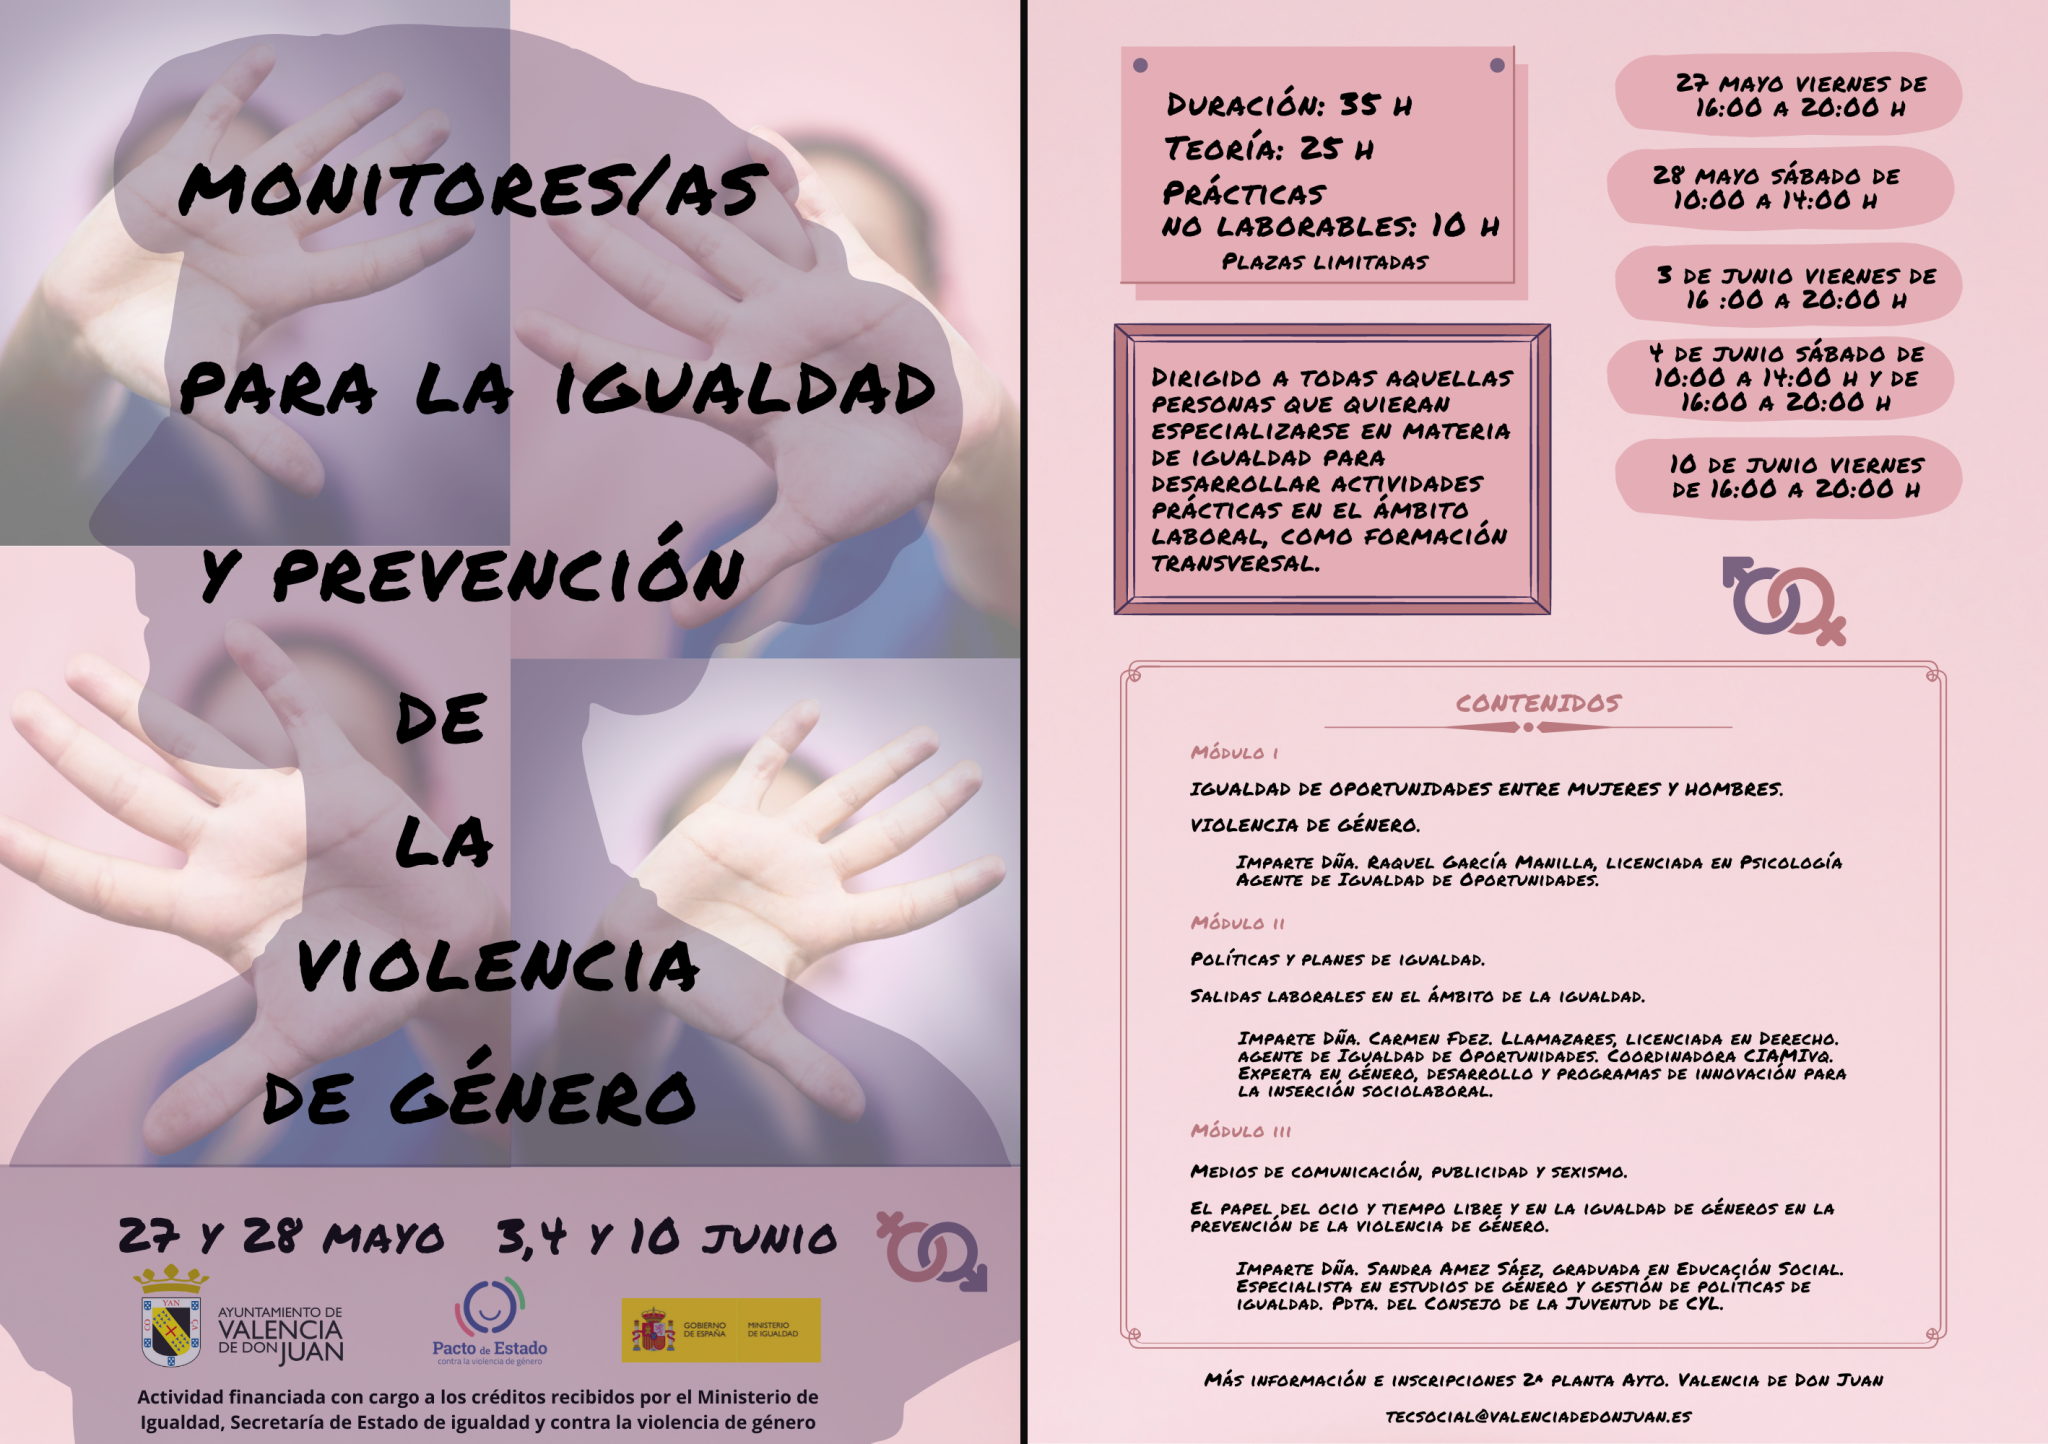 Monitores/as para la Igualdad y prevención de  la violencia de género